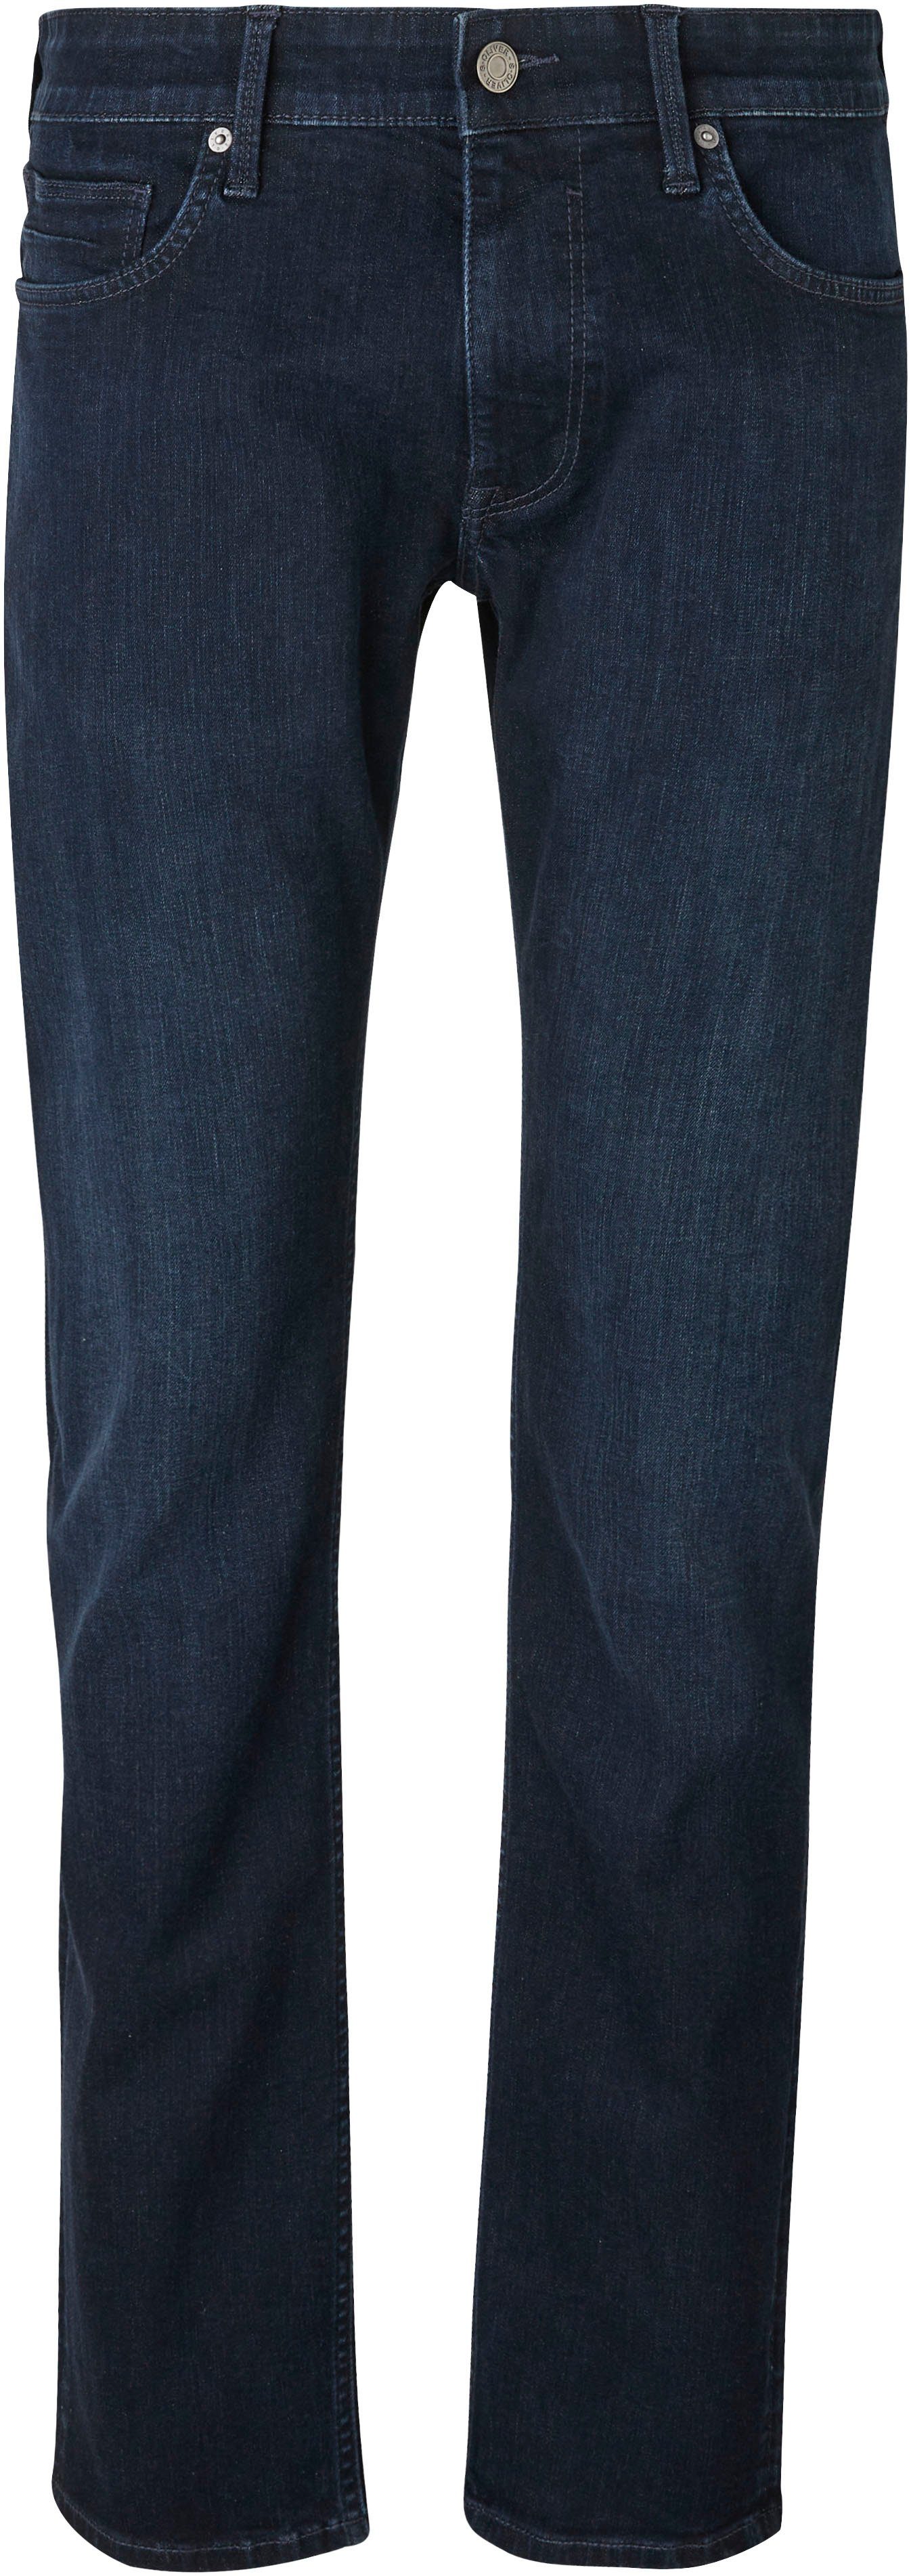 Jeans und Bequeme blue s.Oliver Gesäß- Eingrifftaschen 32 dark mit